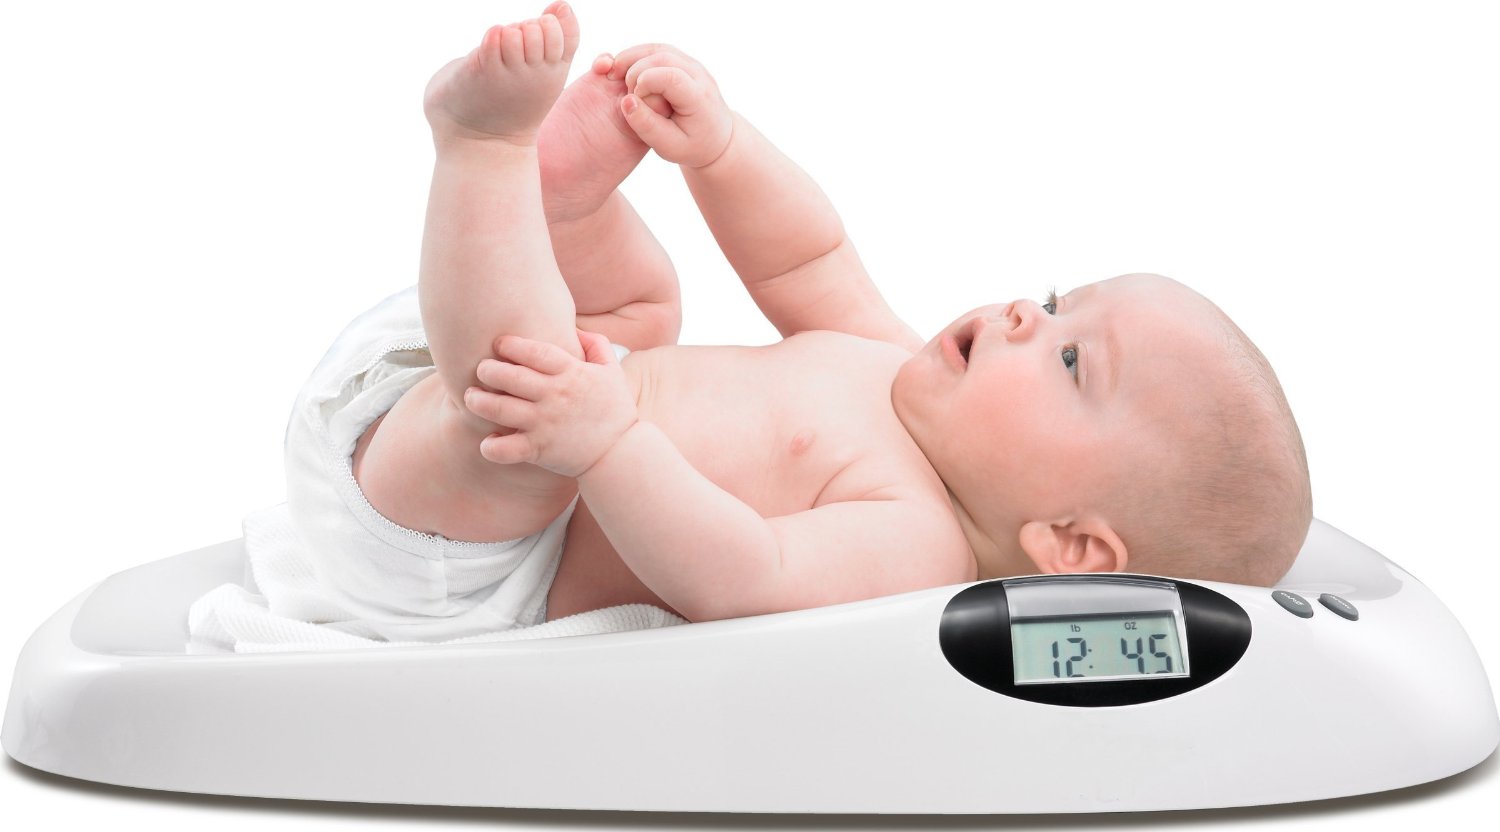 Bioacimin - 01 - June - Cách giúp bé tăng cân đơn giản mà hiệu quả1